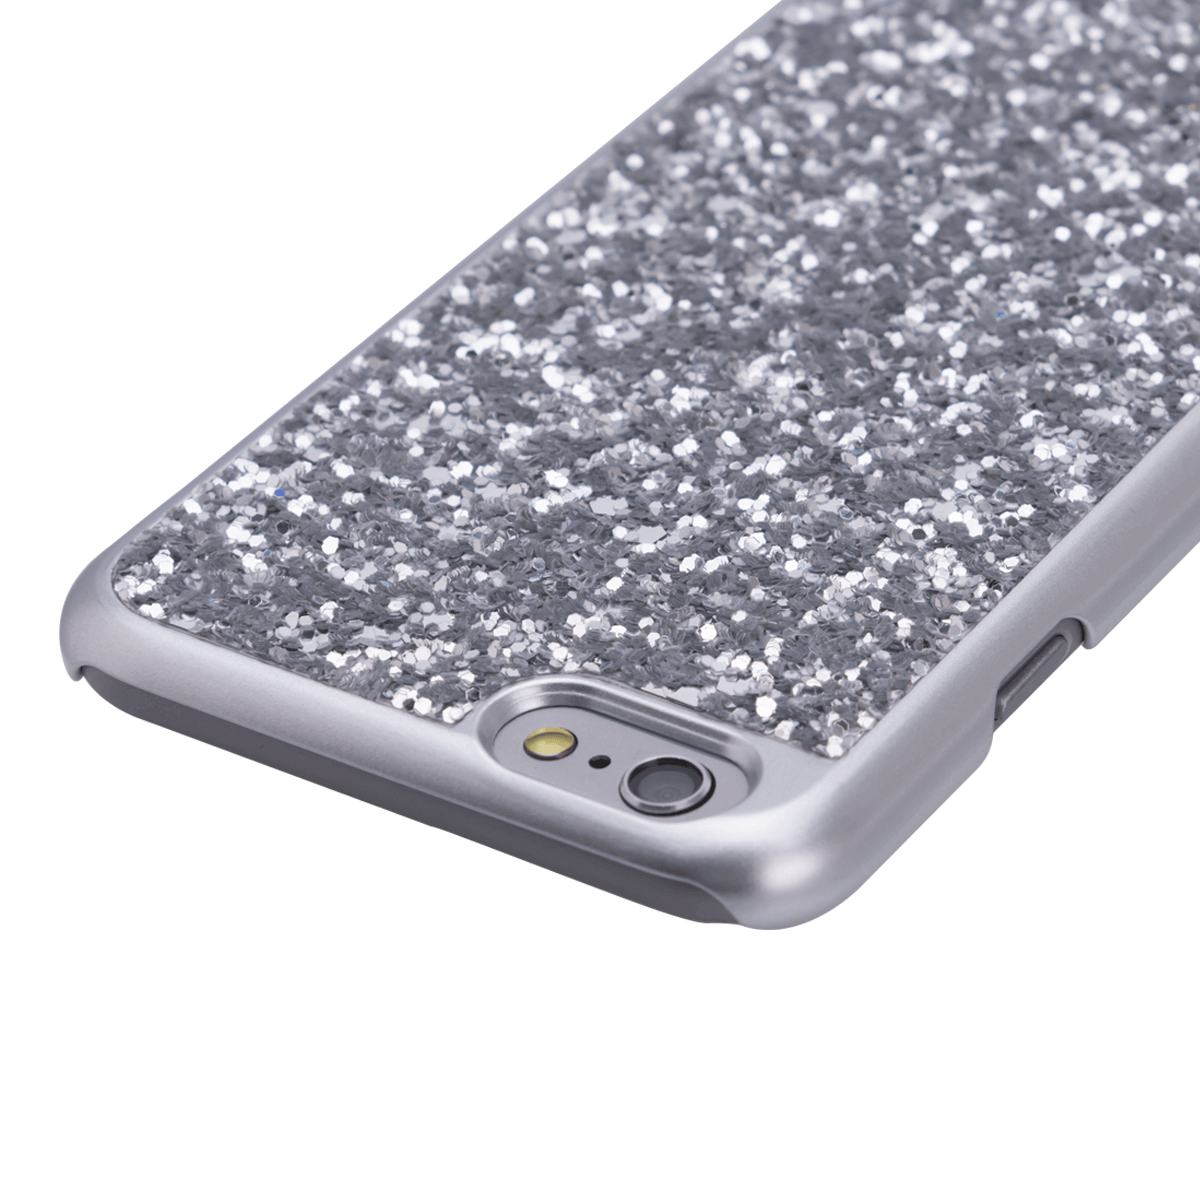 iPhone 6/6S Plus için spada Glitter Gümüş renk Kapak